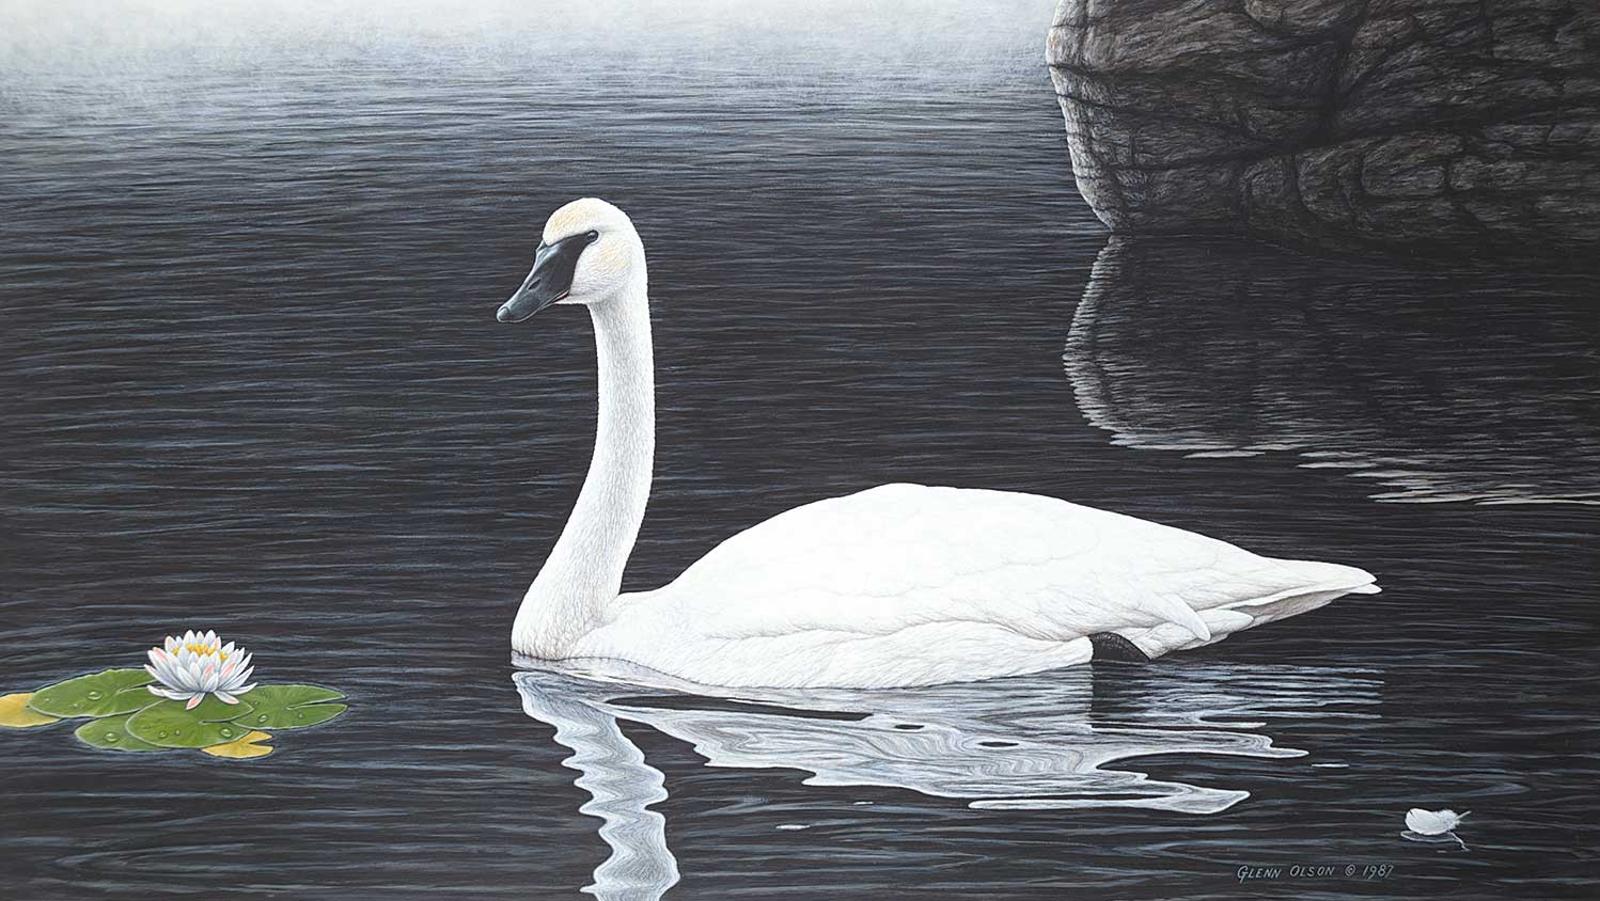 Glenn Olson (1945) - Serene Splendor - Trumpeter Swan